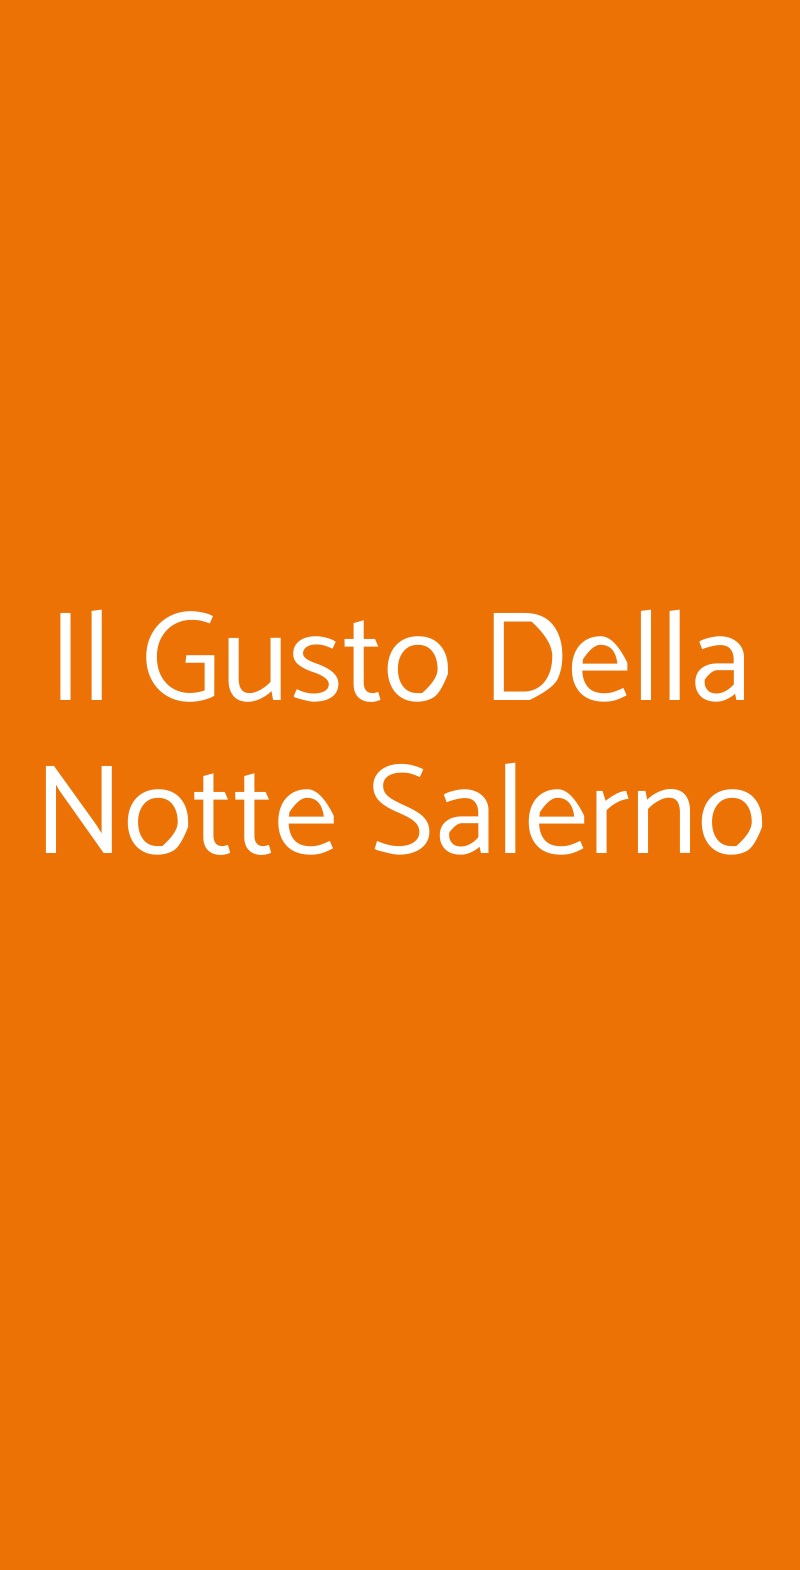 Il Gusto Della Notte Salerno Salerno menù 1 pagina